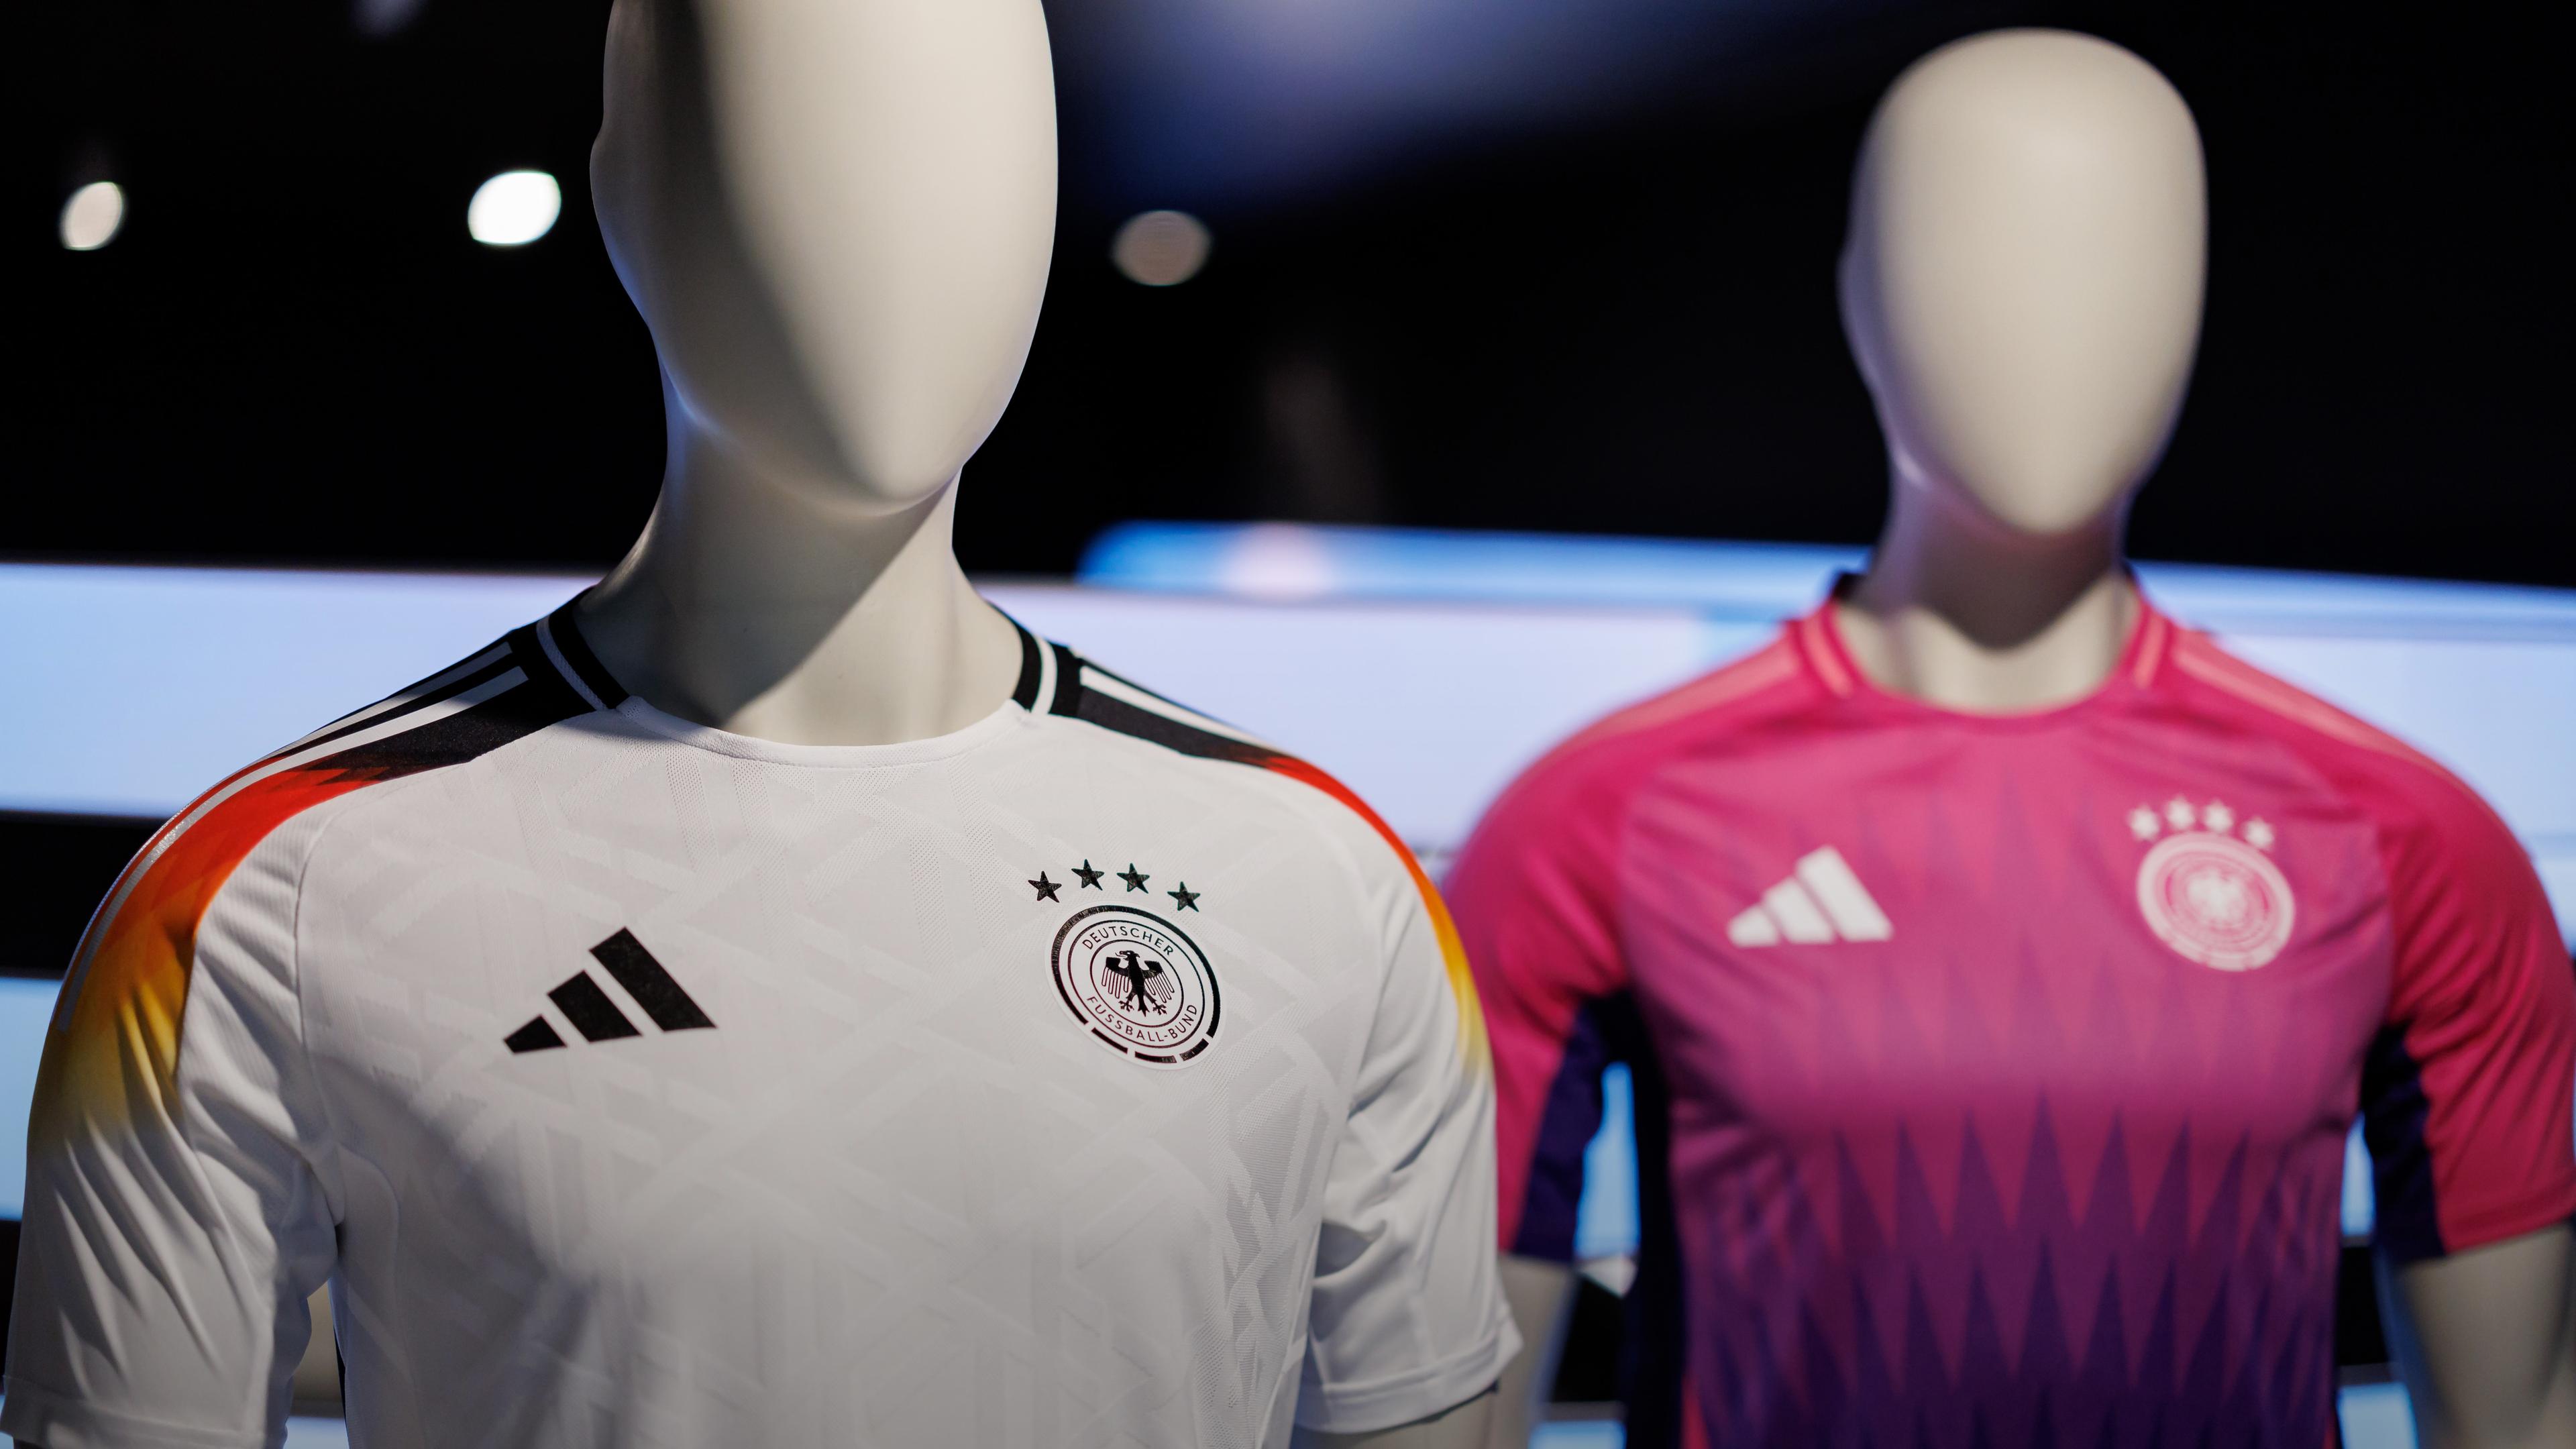 Bayern, Herzogenaurach: Die offiziellen Trikots der deutschen Fußball-Nationalmannschaft für die kommende Fußball-Europameisterschaft 2024 (UEFA EURO 2024) sind am Sitz des Sportartikelherstellers adidas AG zu sehen.